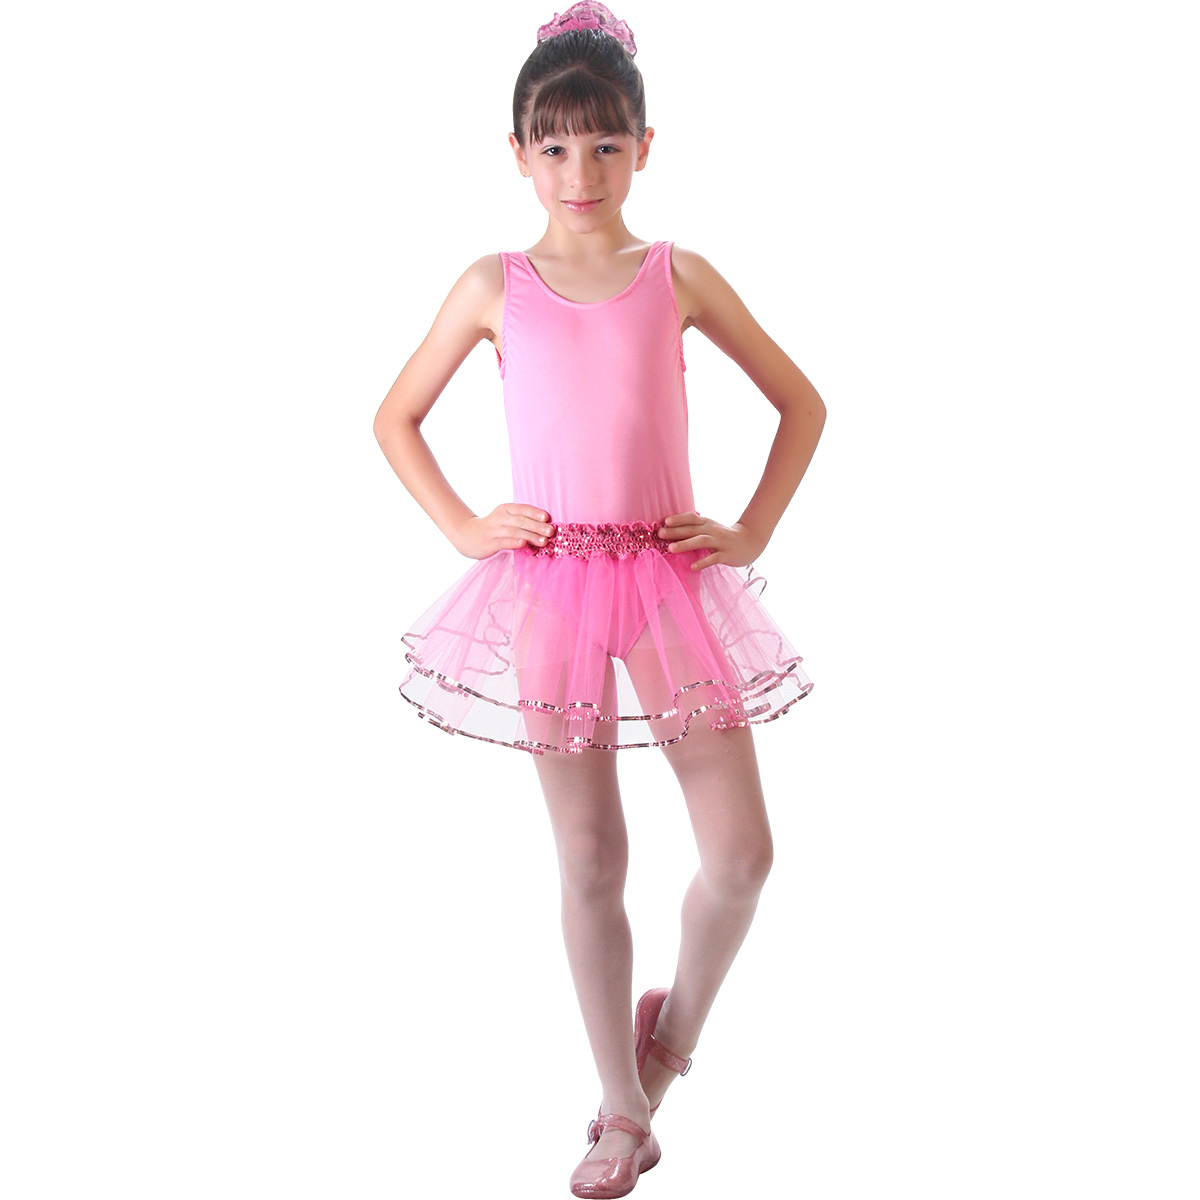 Fantasia Infantil - Bailarina Basic - Tamanho G (9 a 12 anos) - 10652 - Sulamericana